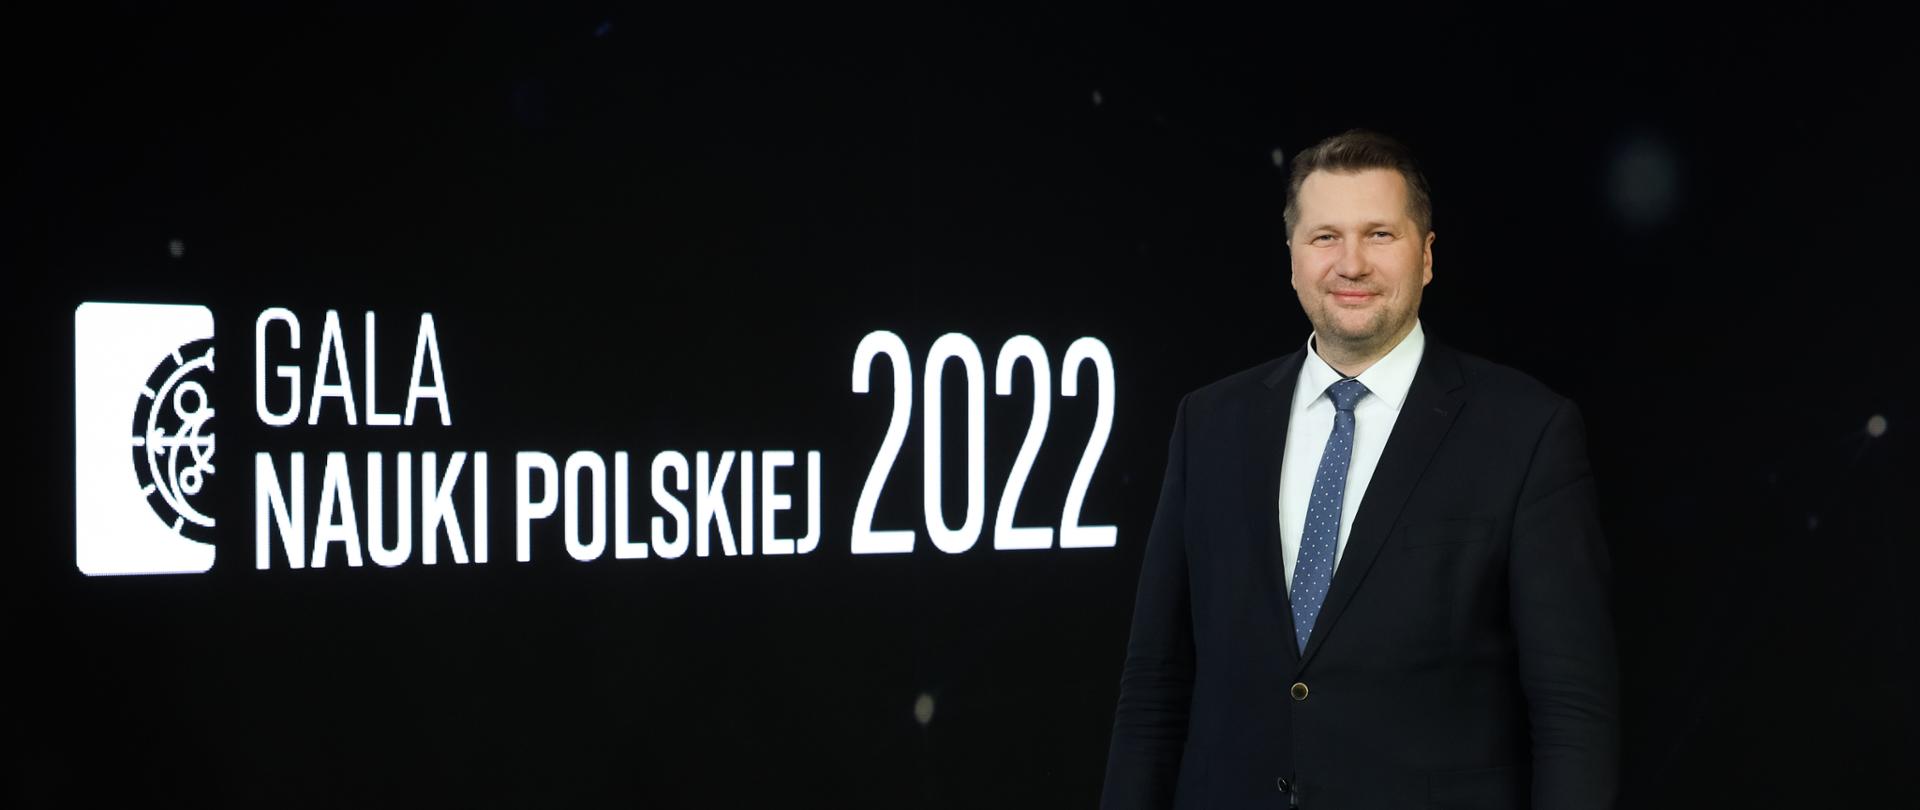 z prawej strony zdjęcia minister czarnek. Z lewej biały napis na czarnym tle gala nauki polskiej 2022